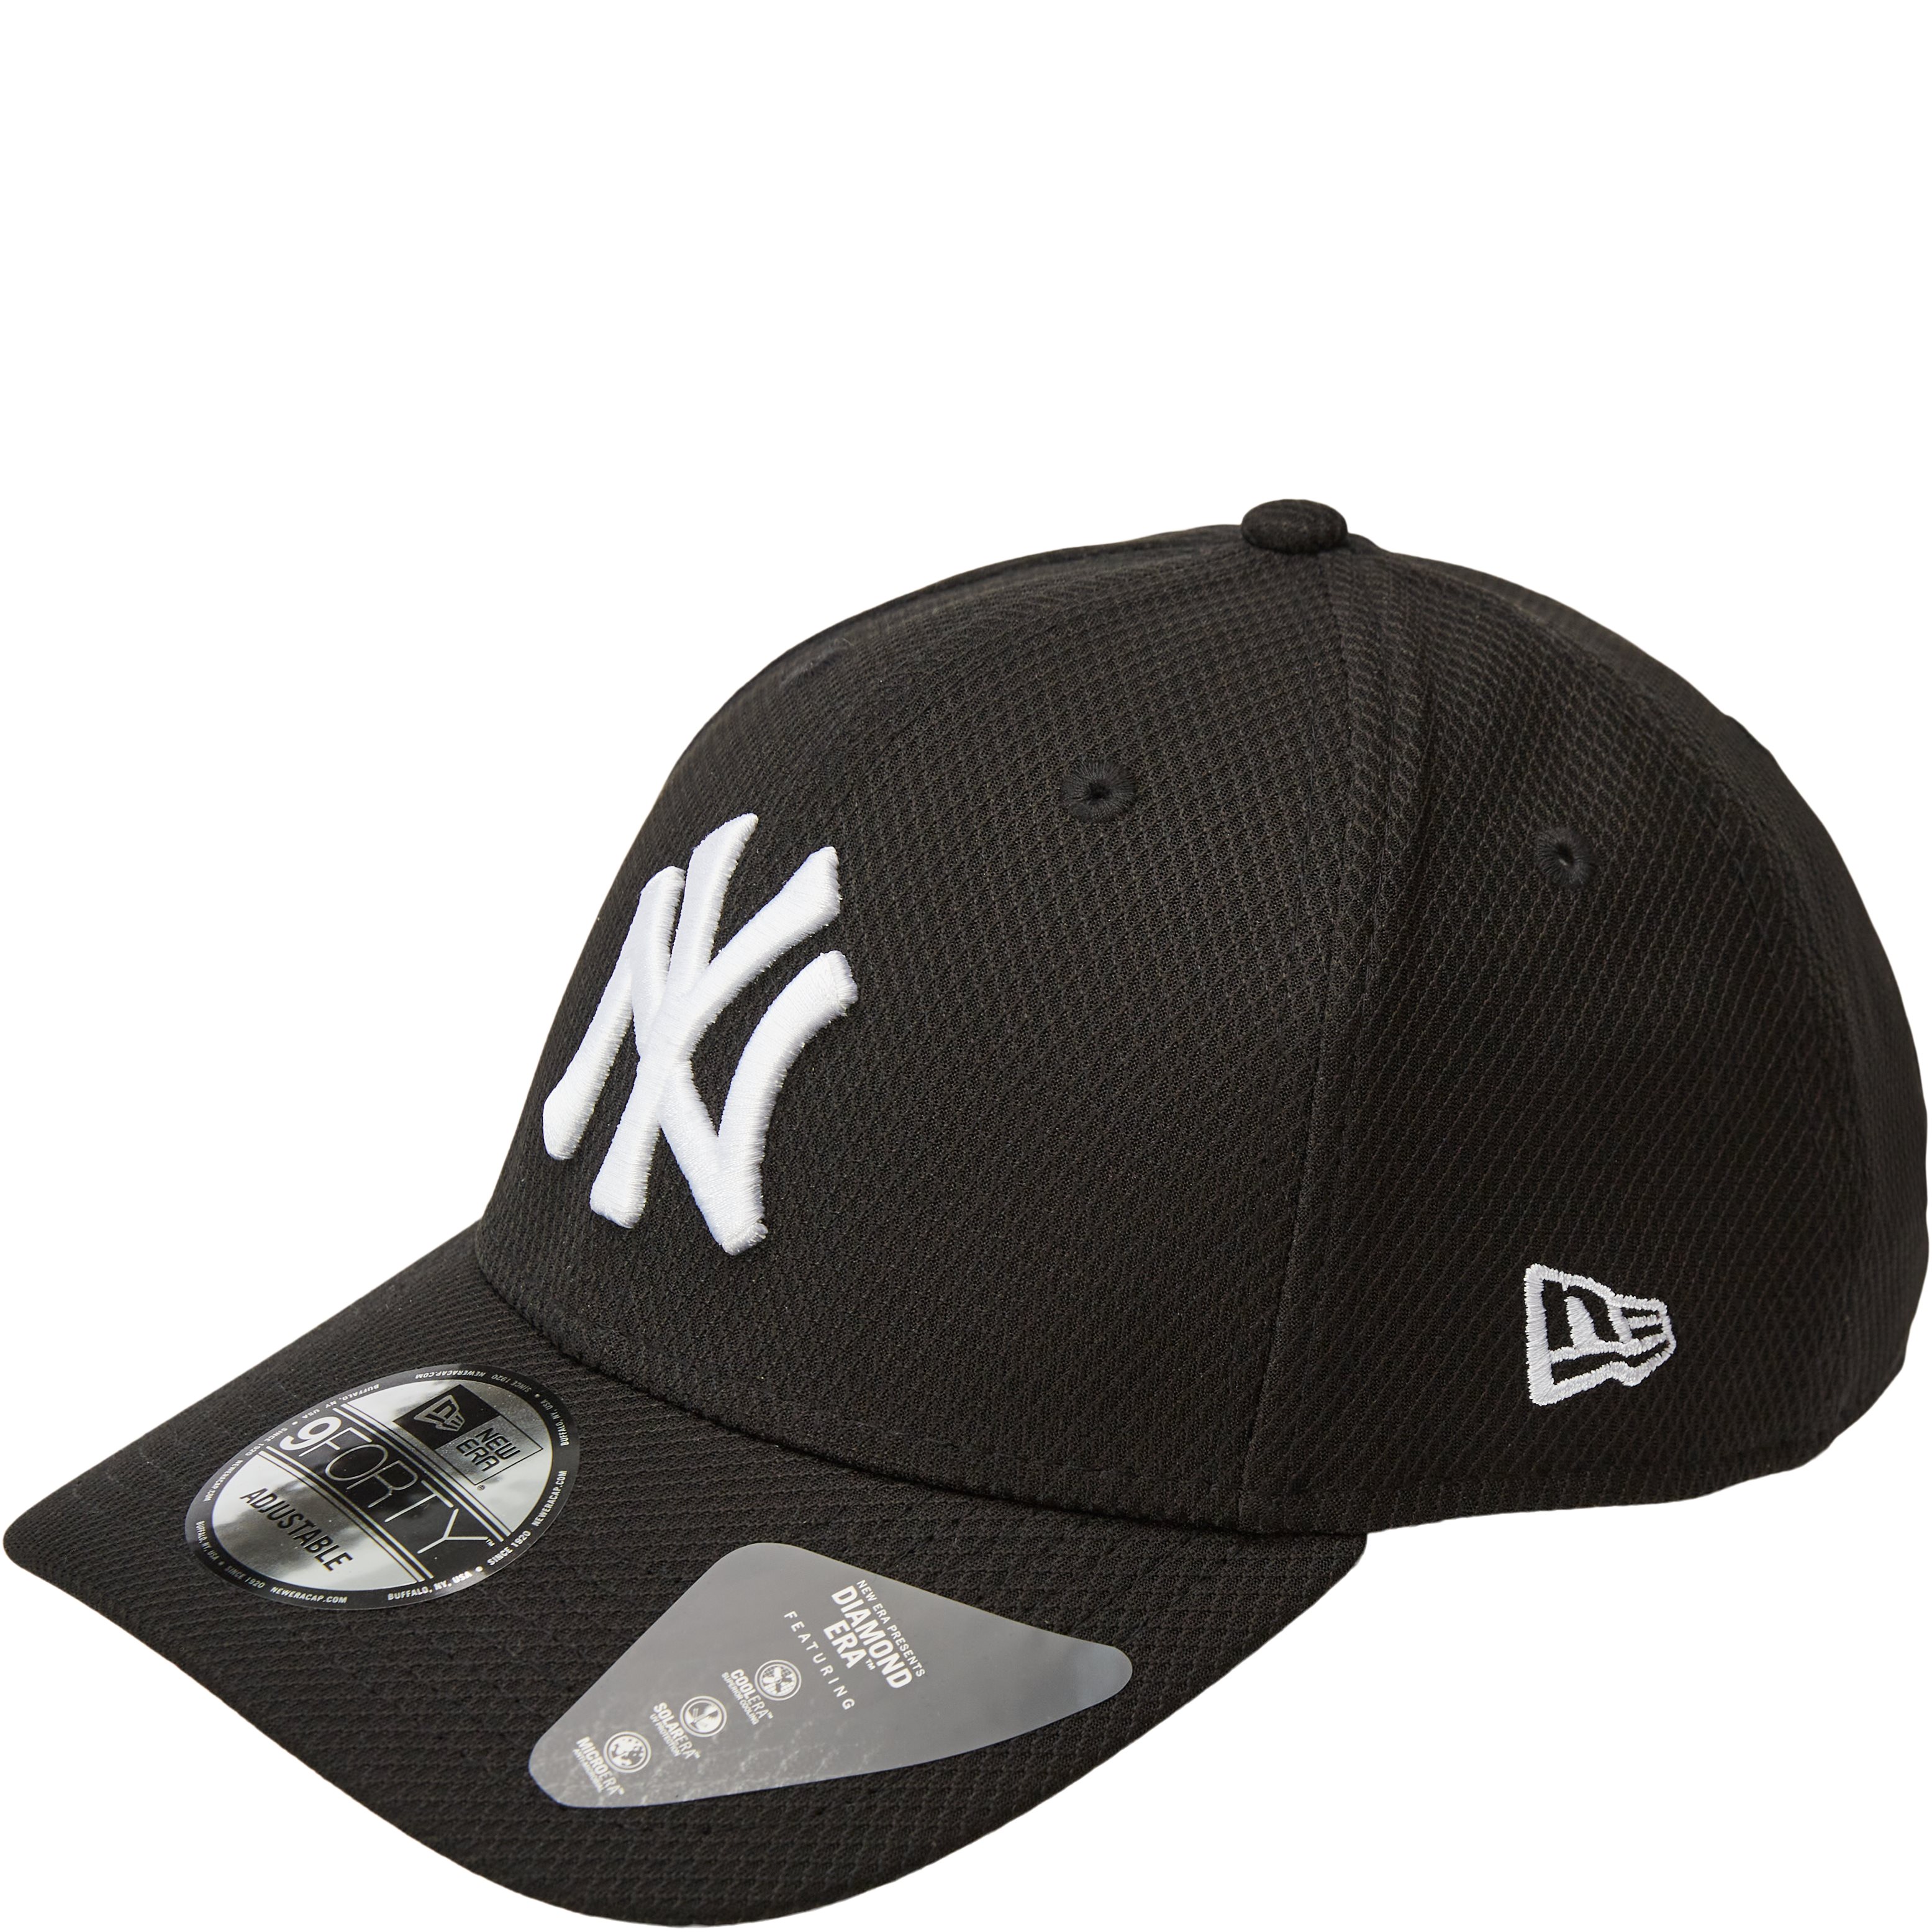 940 Ny Diamond Cap - Caps - Black